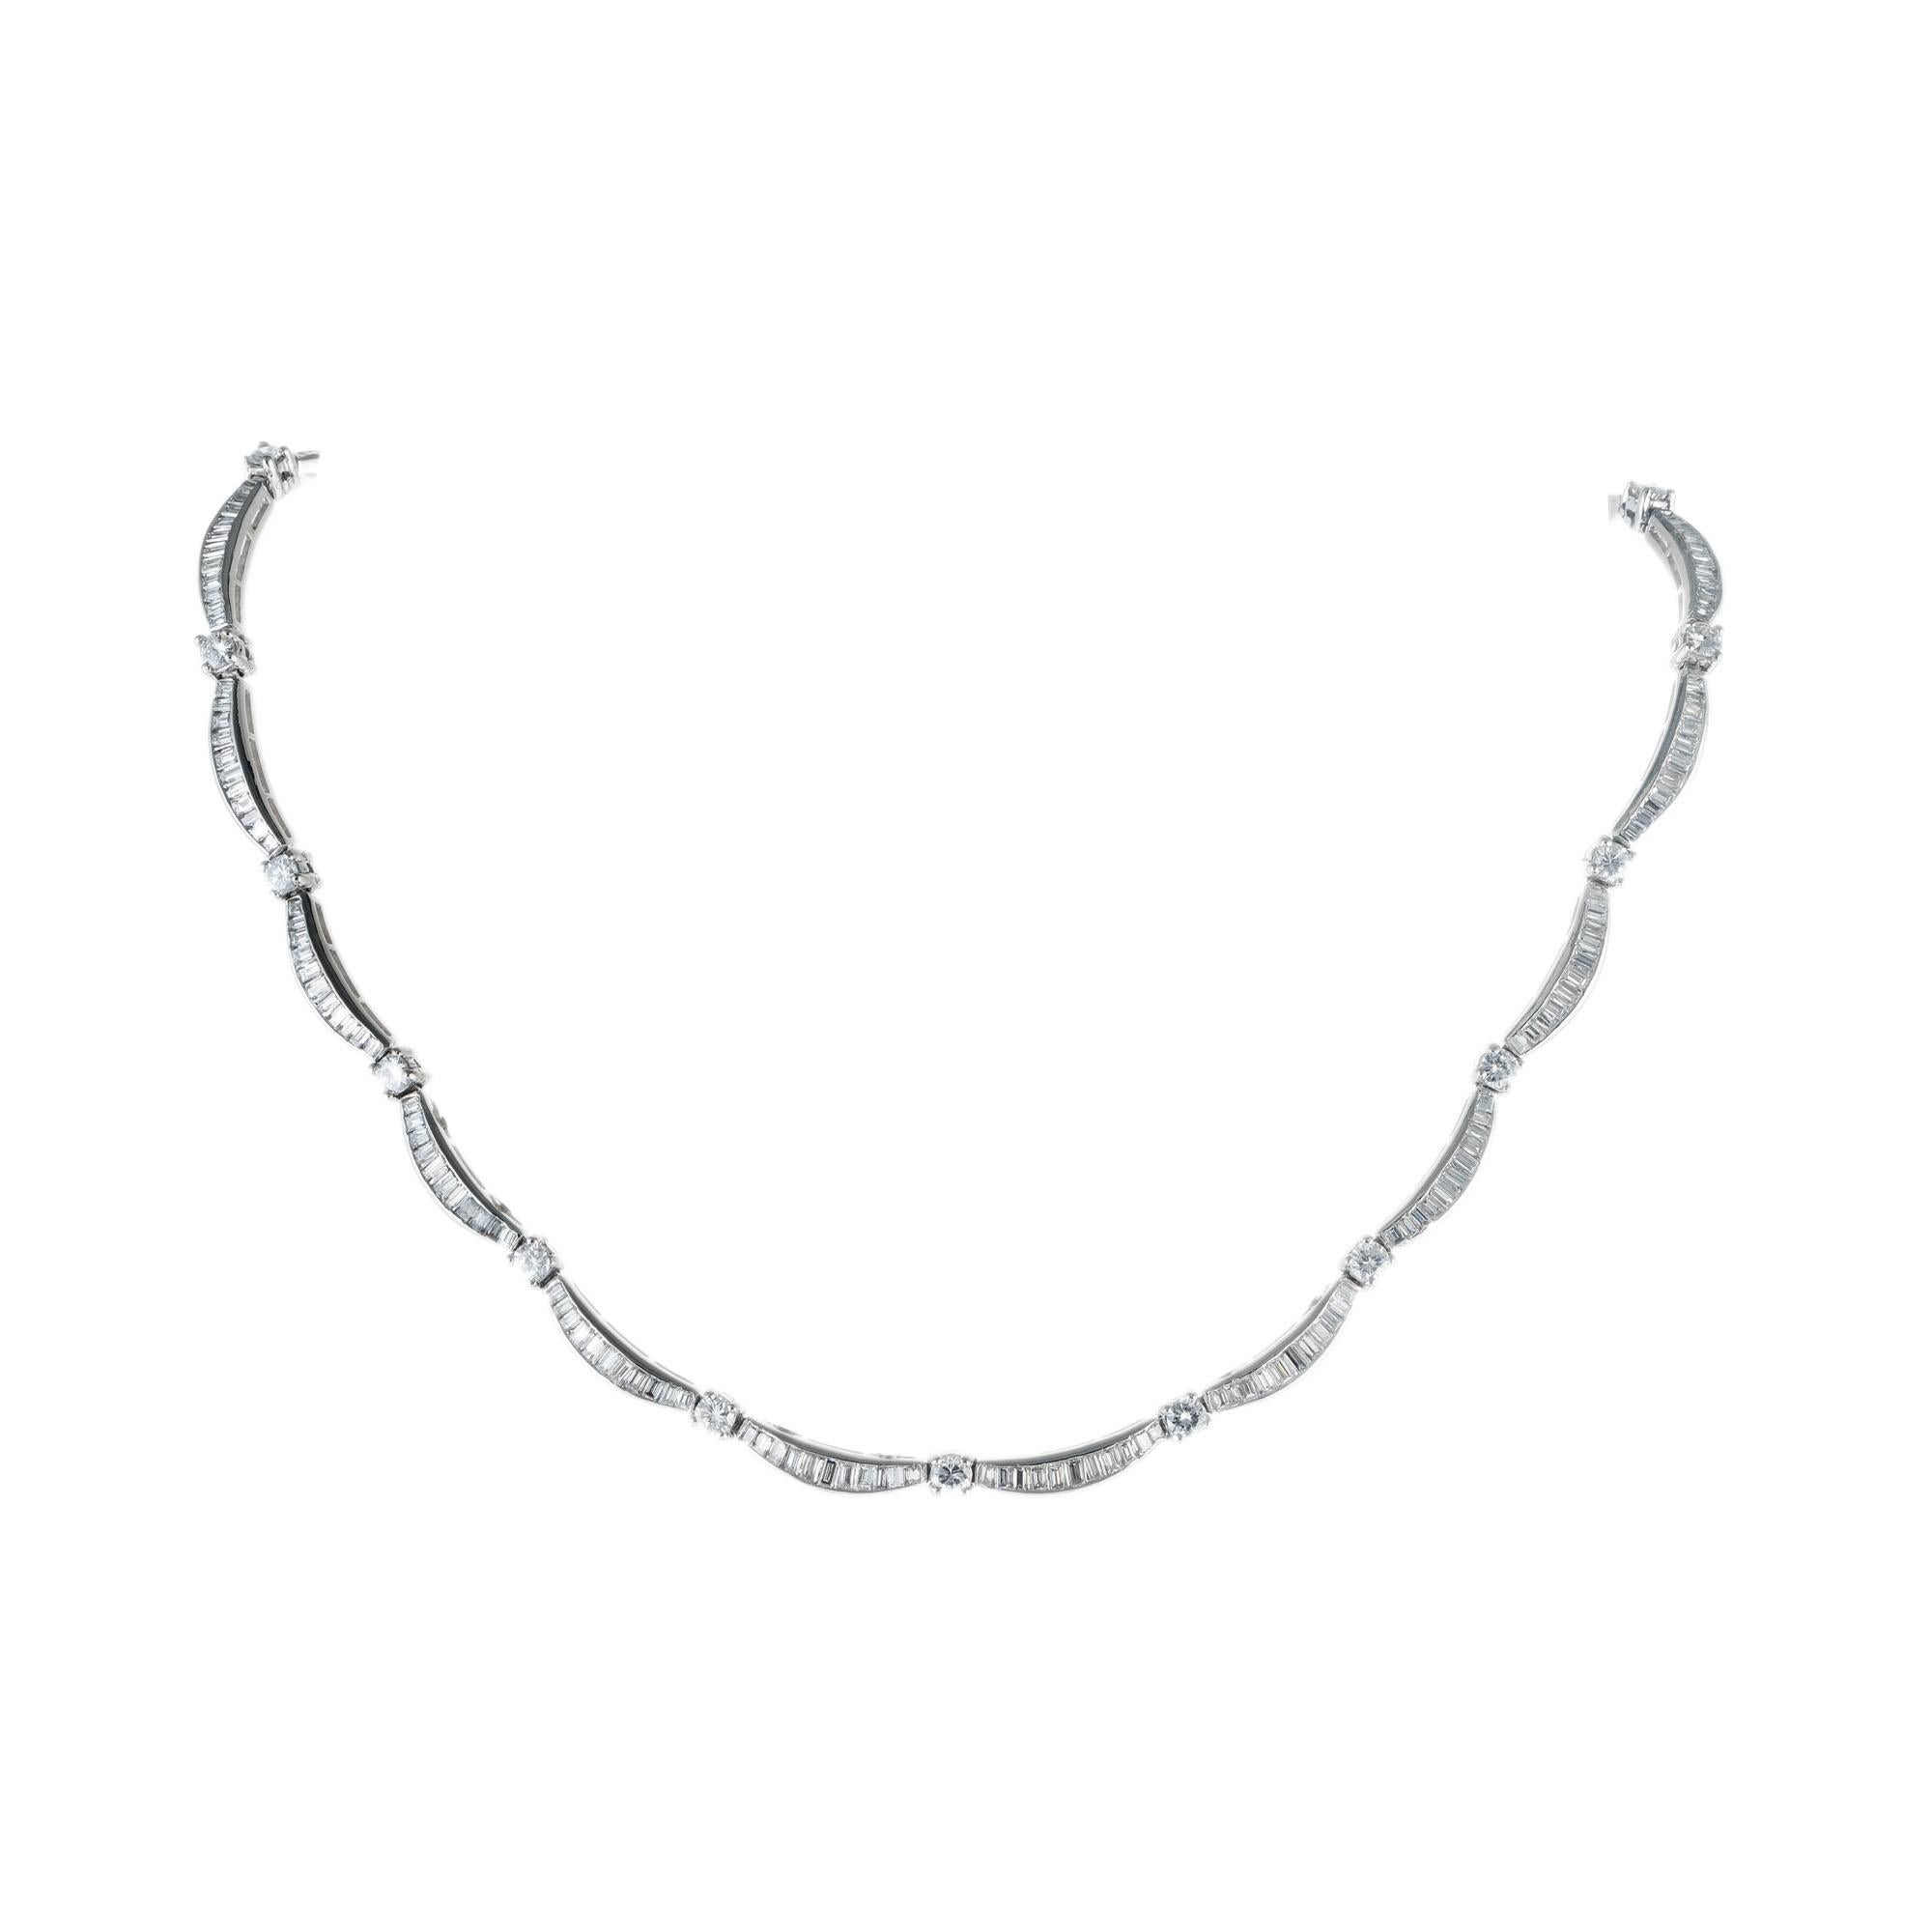 diamant-Halskette aus Platin aus den 1950er Jahren. 209 abgestufte gerade Baguettes, getrennt durch 19 runde Diamanten im Brillantschliff. Eingebauter Verschluss mit Sicherung an der Unterseite. 15 Zoll lang. 

19 runde Diamanten im Brillantschliff,